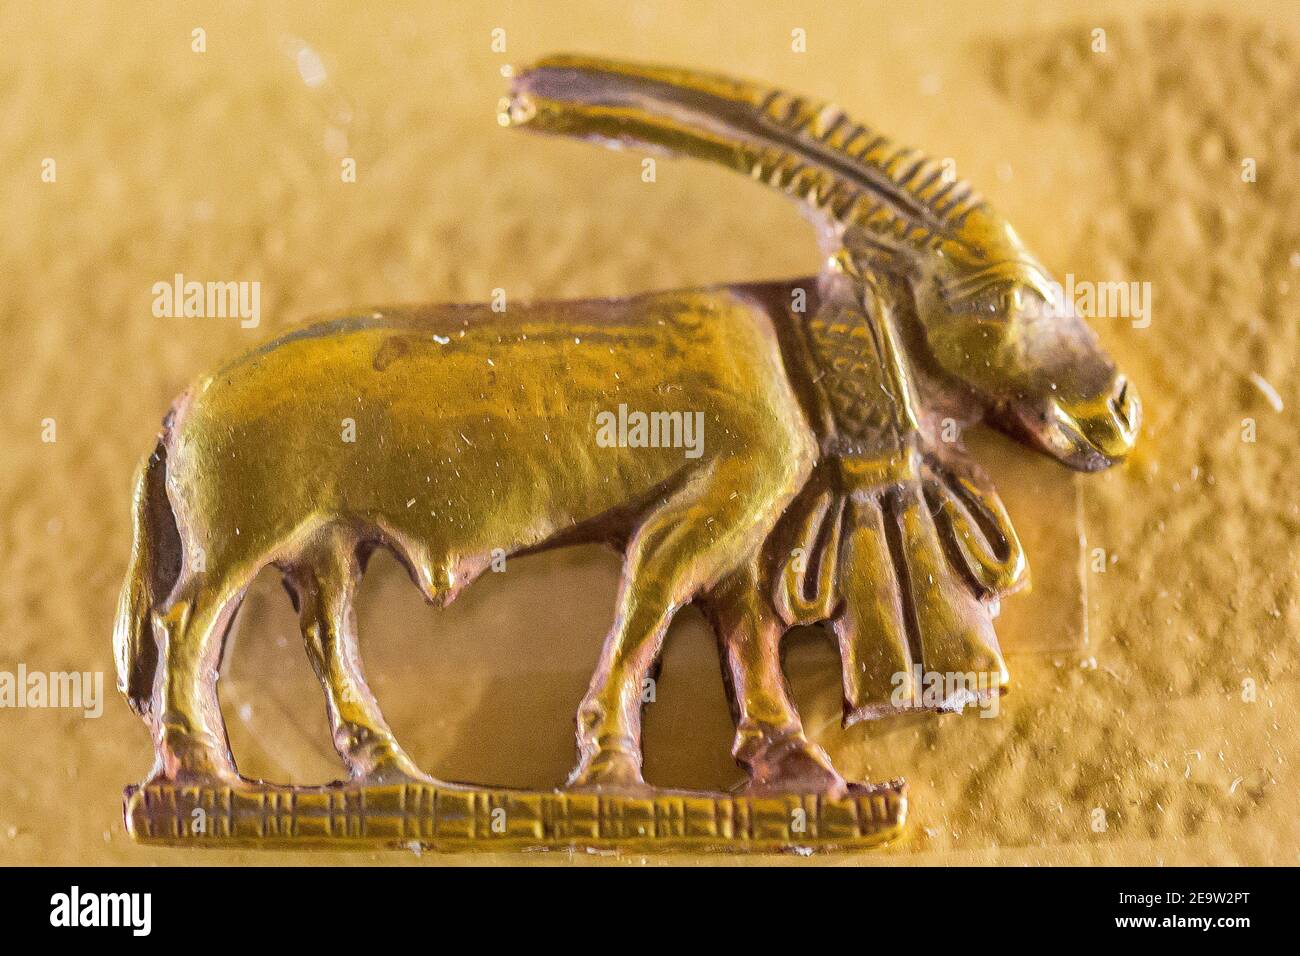 Egitto, Cairo, Museo Egizio, amuleto d'oro trovato in una tomba di Nag el Deir, prima dinastia: Un orice. Foto Stock